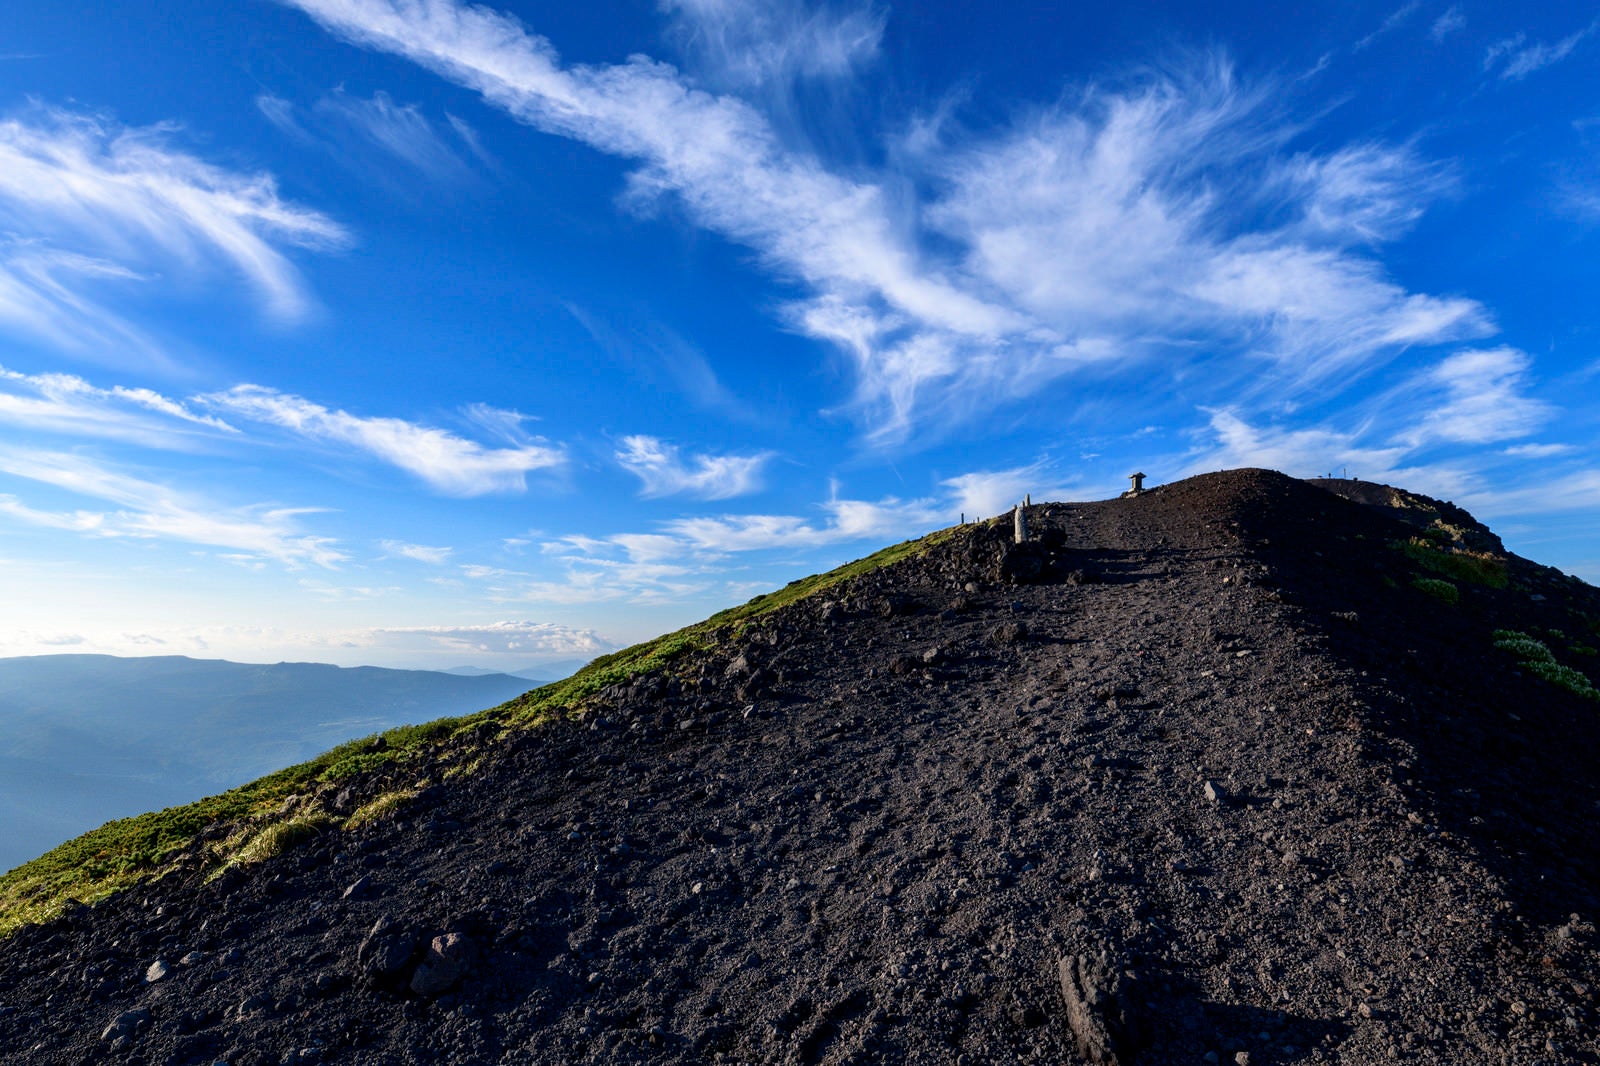 「青空広がる岩手山山頂への登山道」の写真